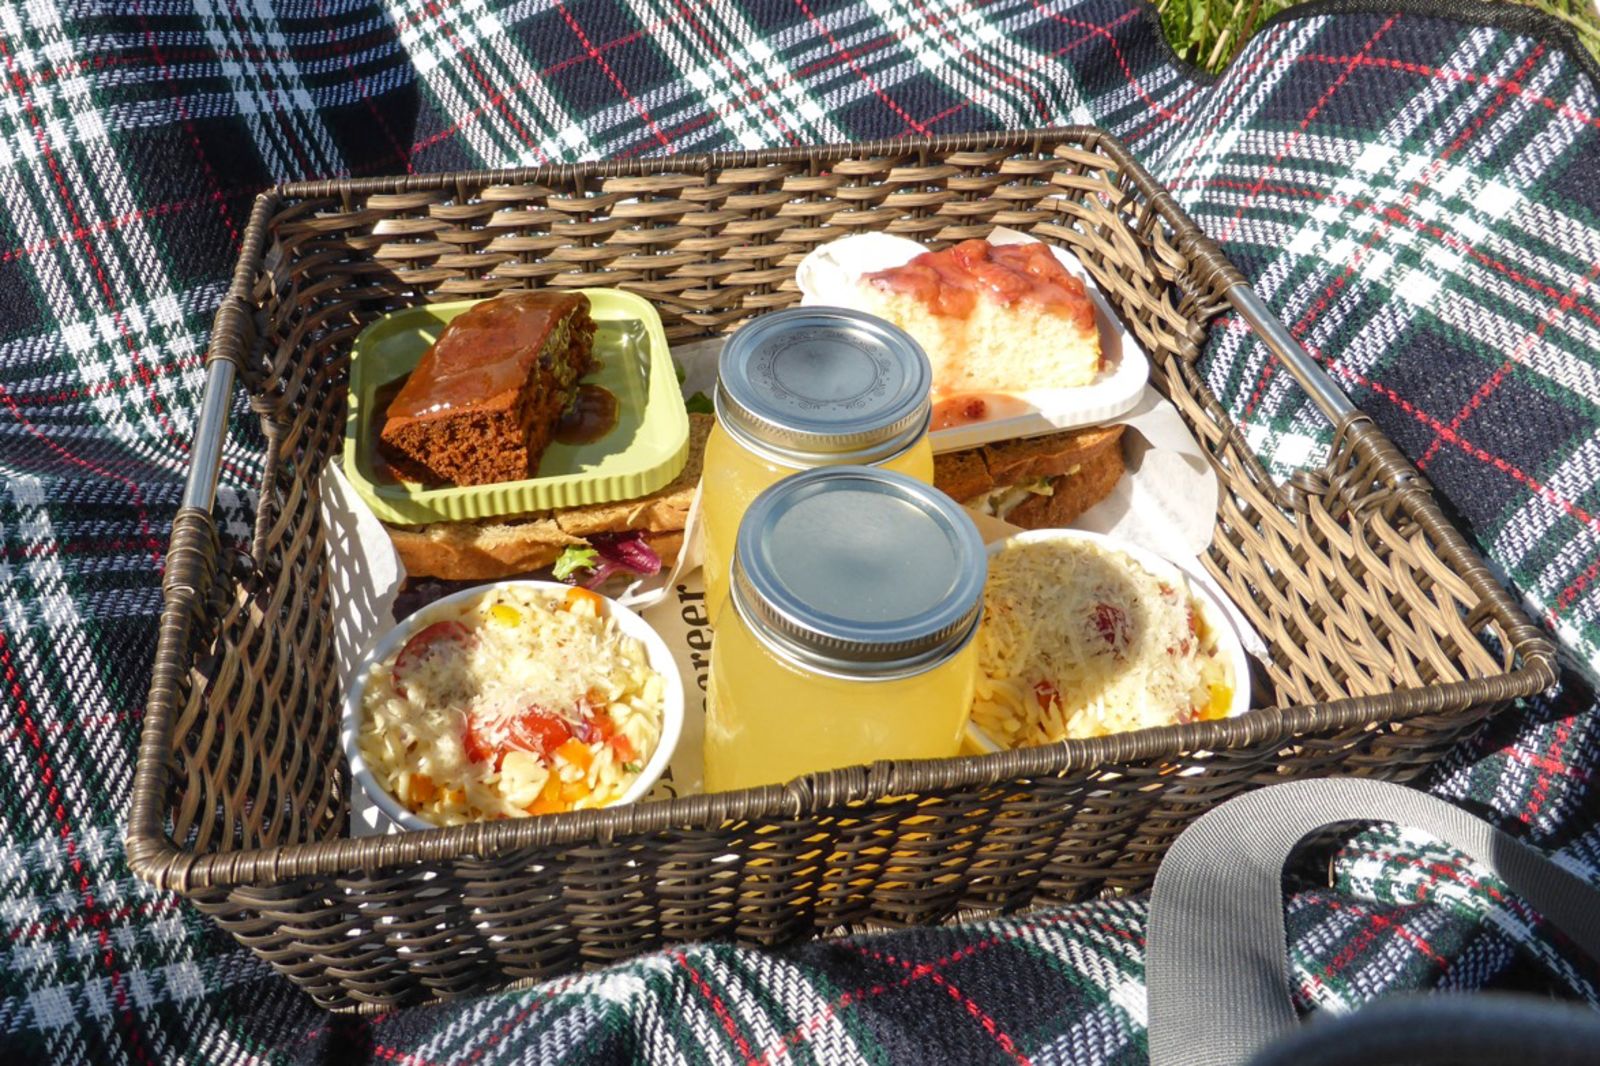 Picknickkorb von Carola Bank